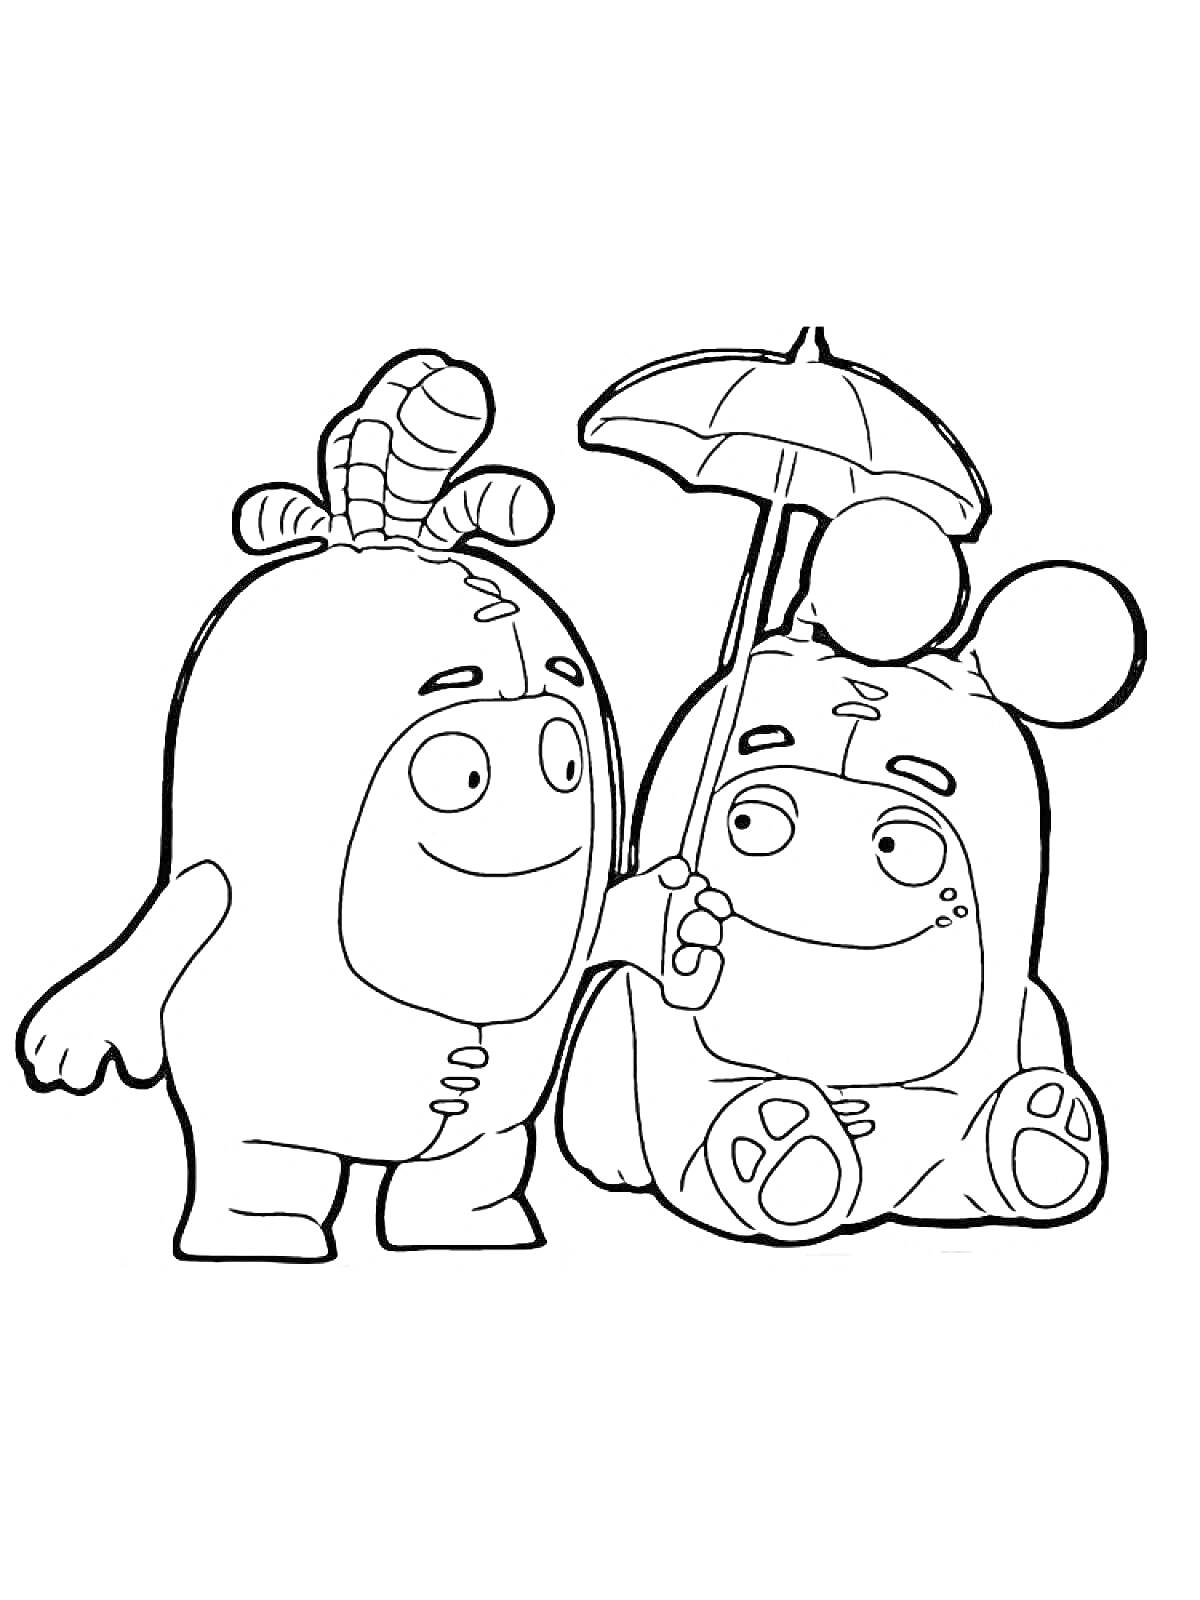 Два чудика, стоящий чудик с рожками и сидящий чудик с ушками, держащие зонтик